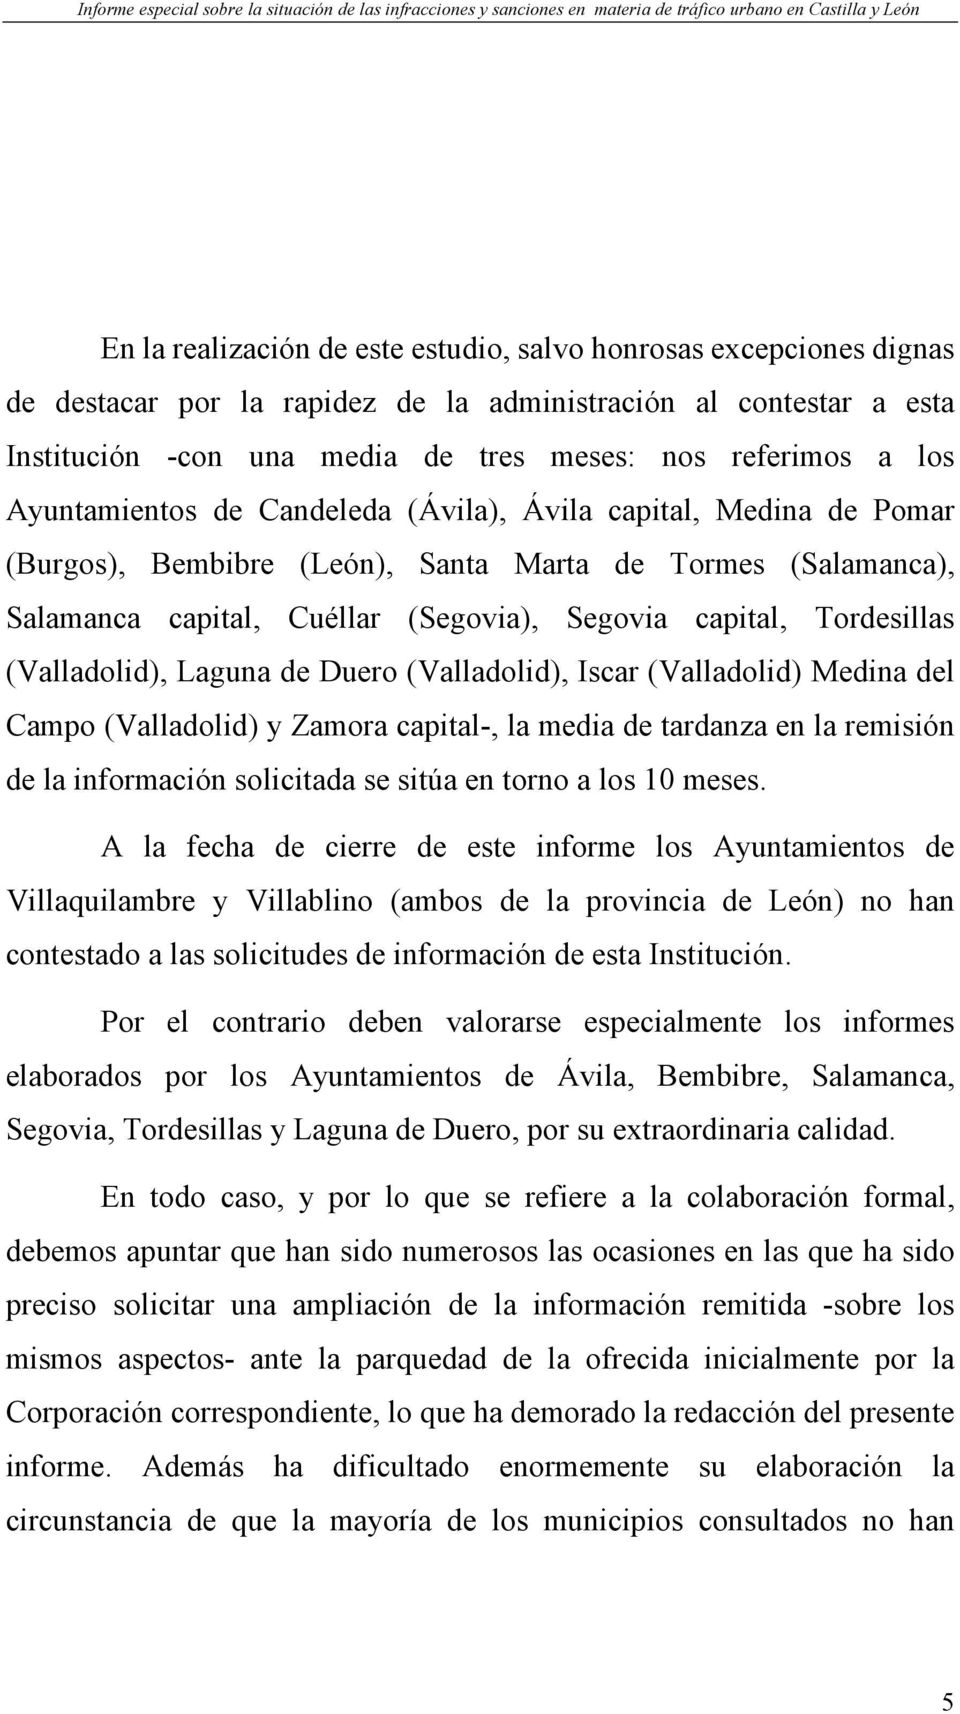 (Valladolid), Laguna de Duero (Valladolid), Iscar (Valladolid) Medina del Campo (Valladolid) y Zamora capital-, la media de tardanza en la remisión de la información solicitada se sitúa en torno a